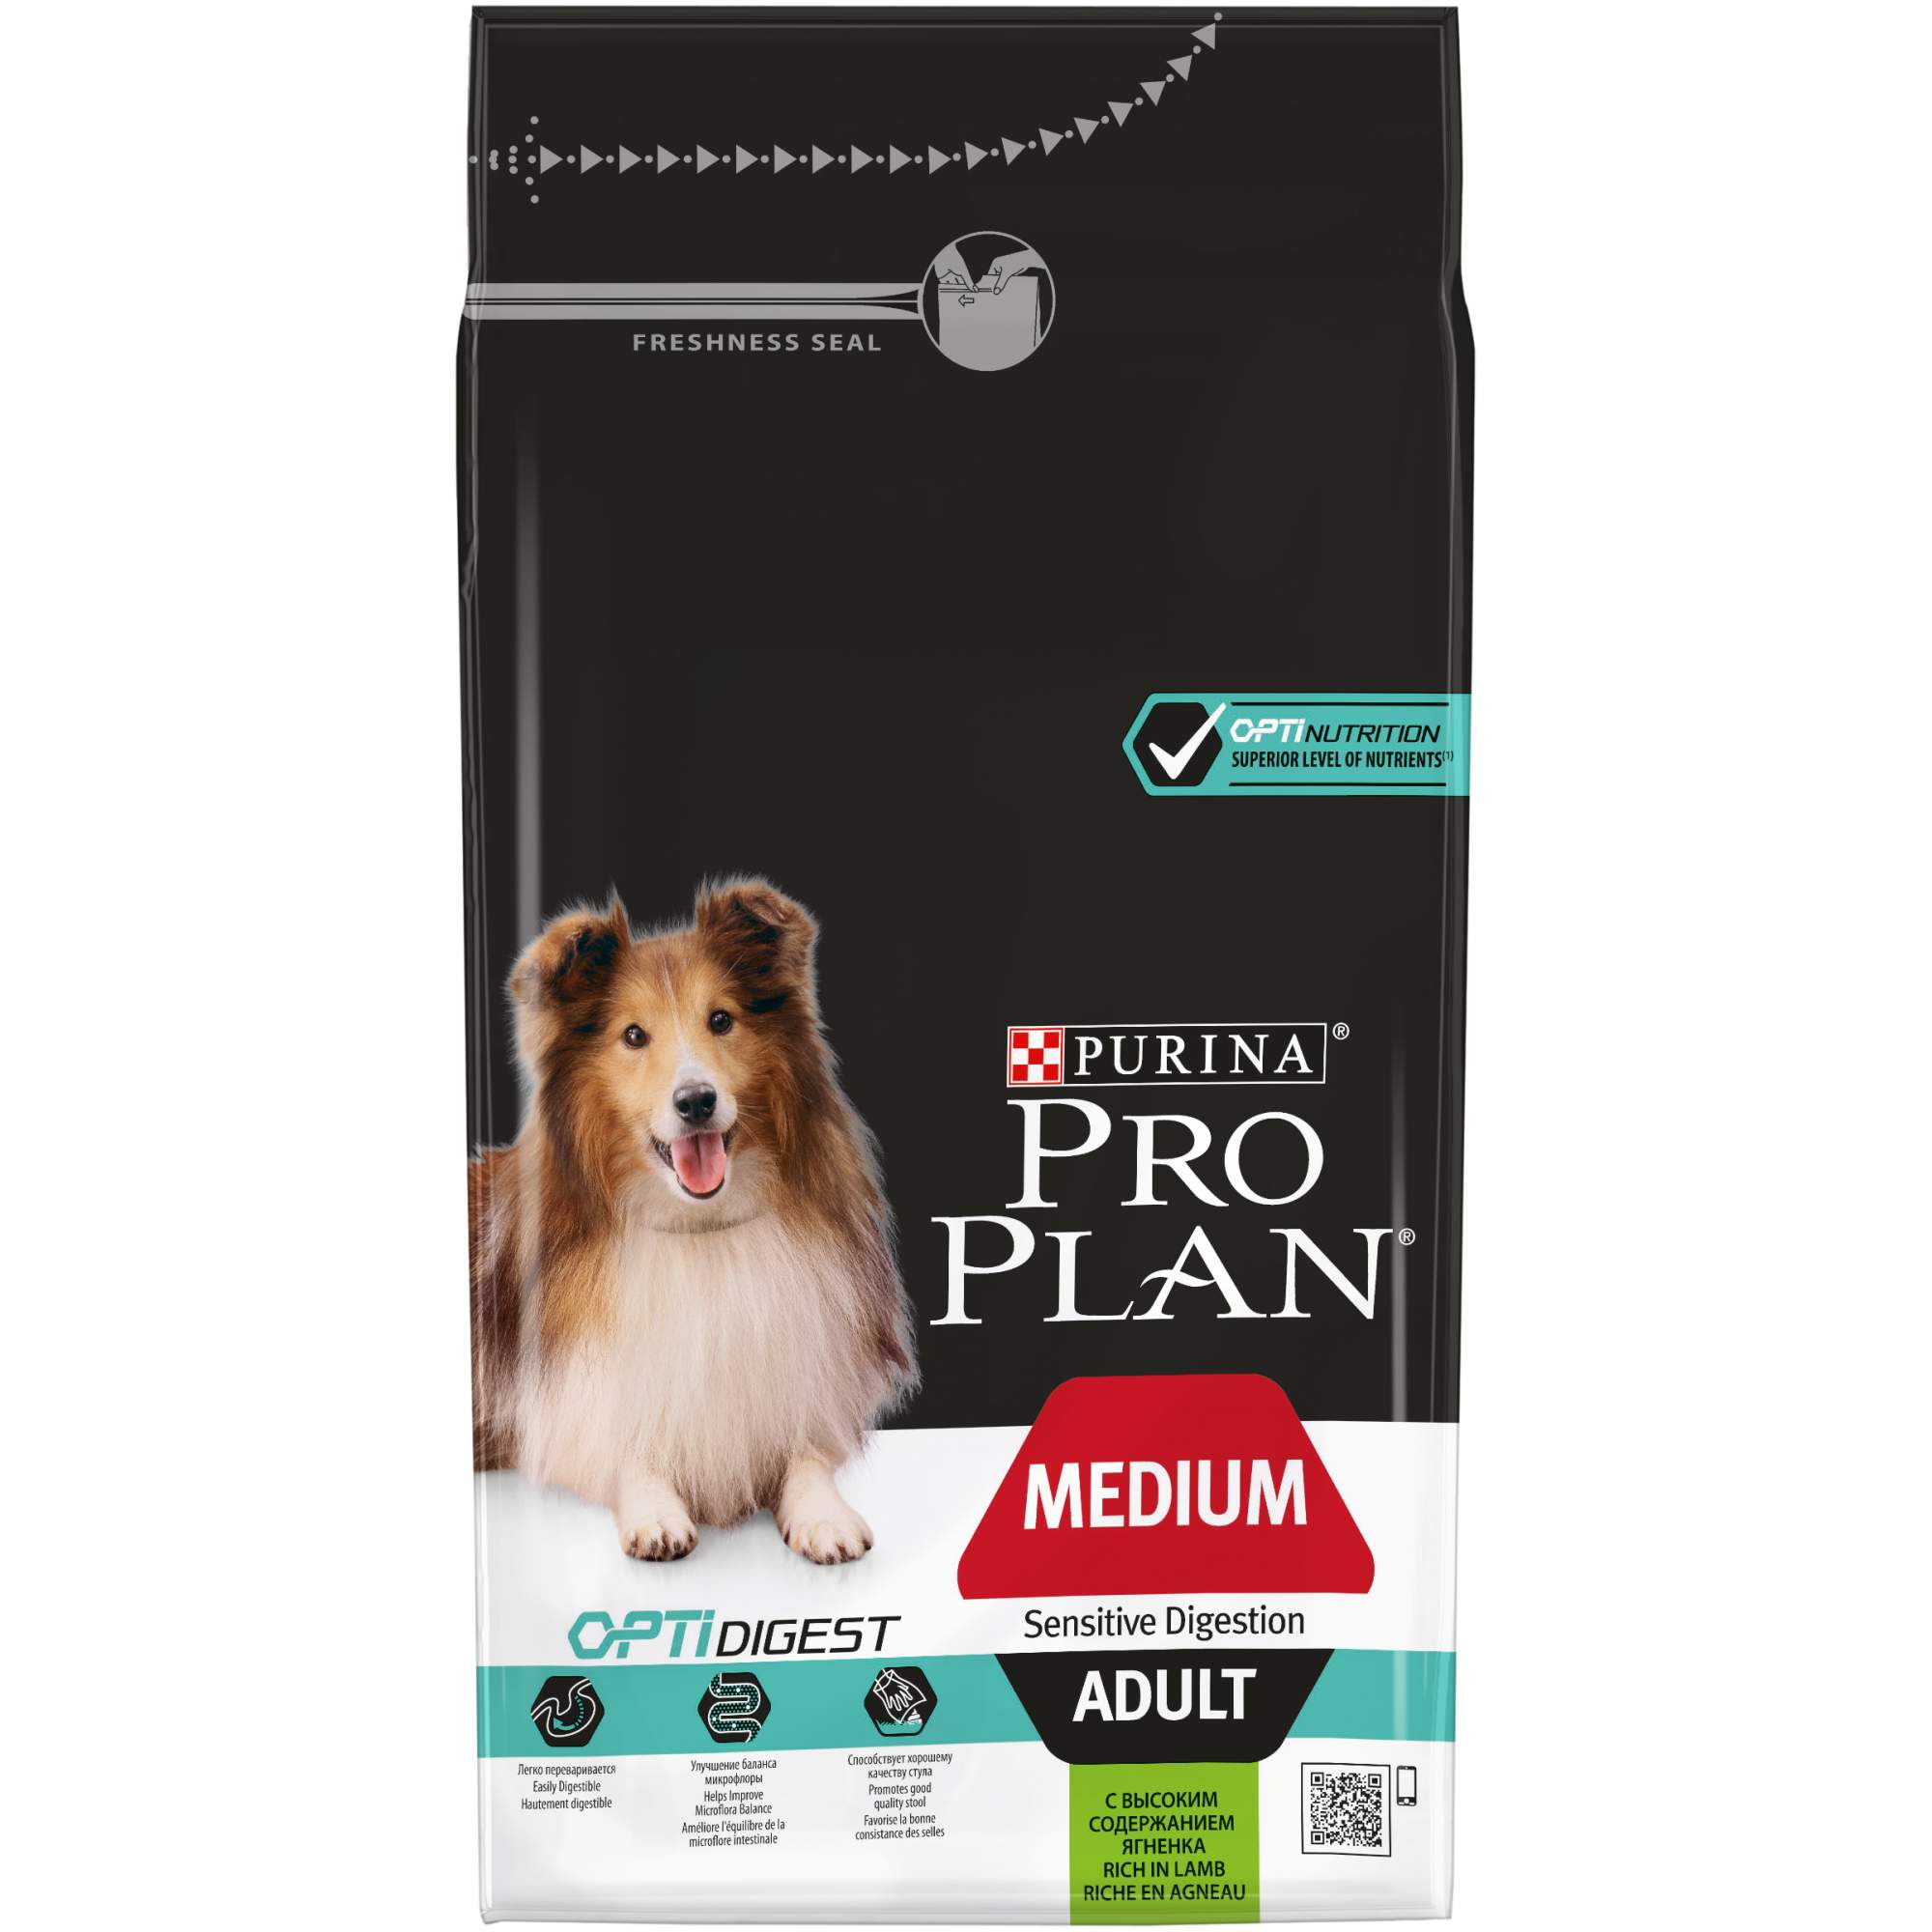 Сухой корм для собак PRO PLAN OptiDigest Medium Adult, для средних пород, ягненок, 1,5кг